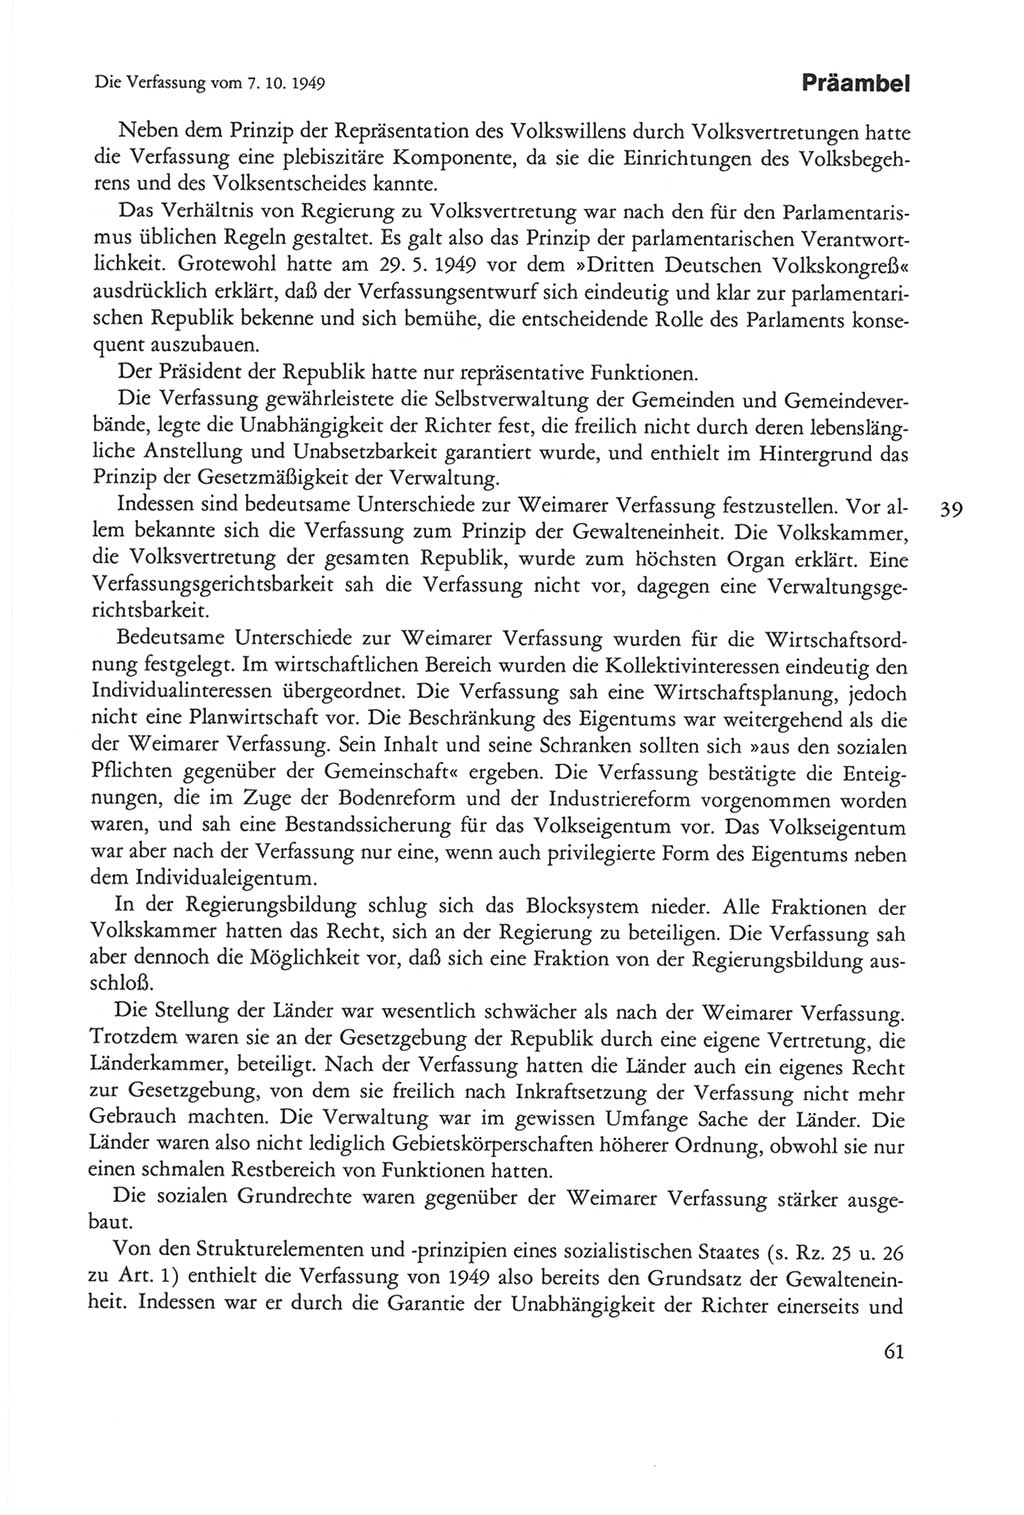 Die sozialistische Verfassung der Deutschen Demokratischen Republik (DDR), Kommentar 1982, Seite 61 (Soz. Verf. DDR Komm. 1982, S. 61)